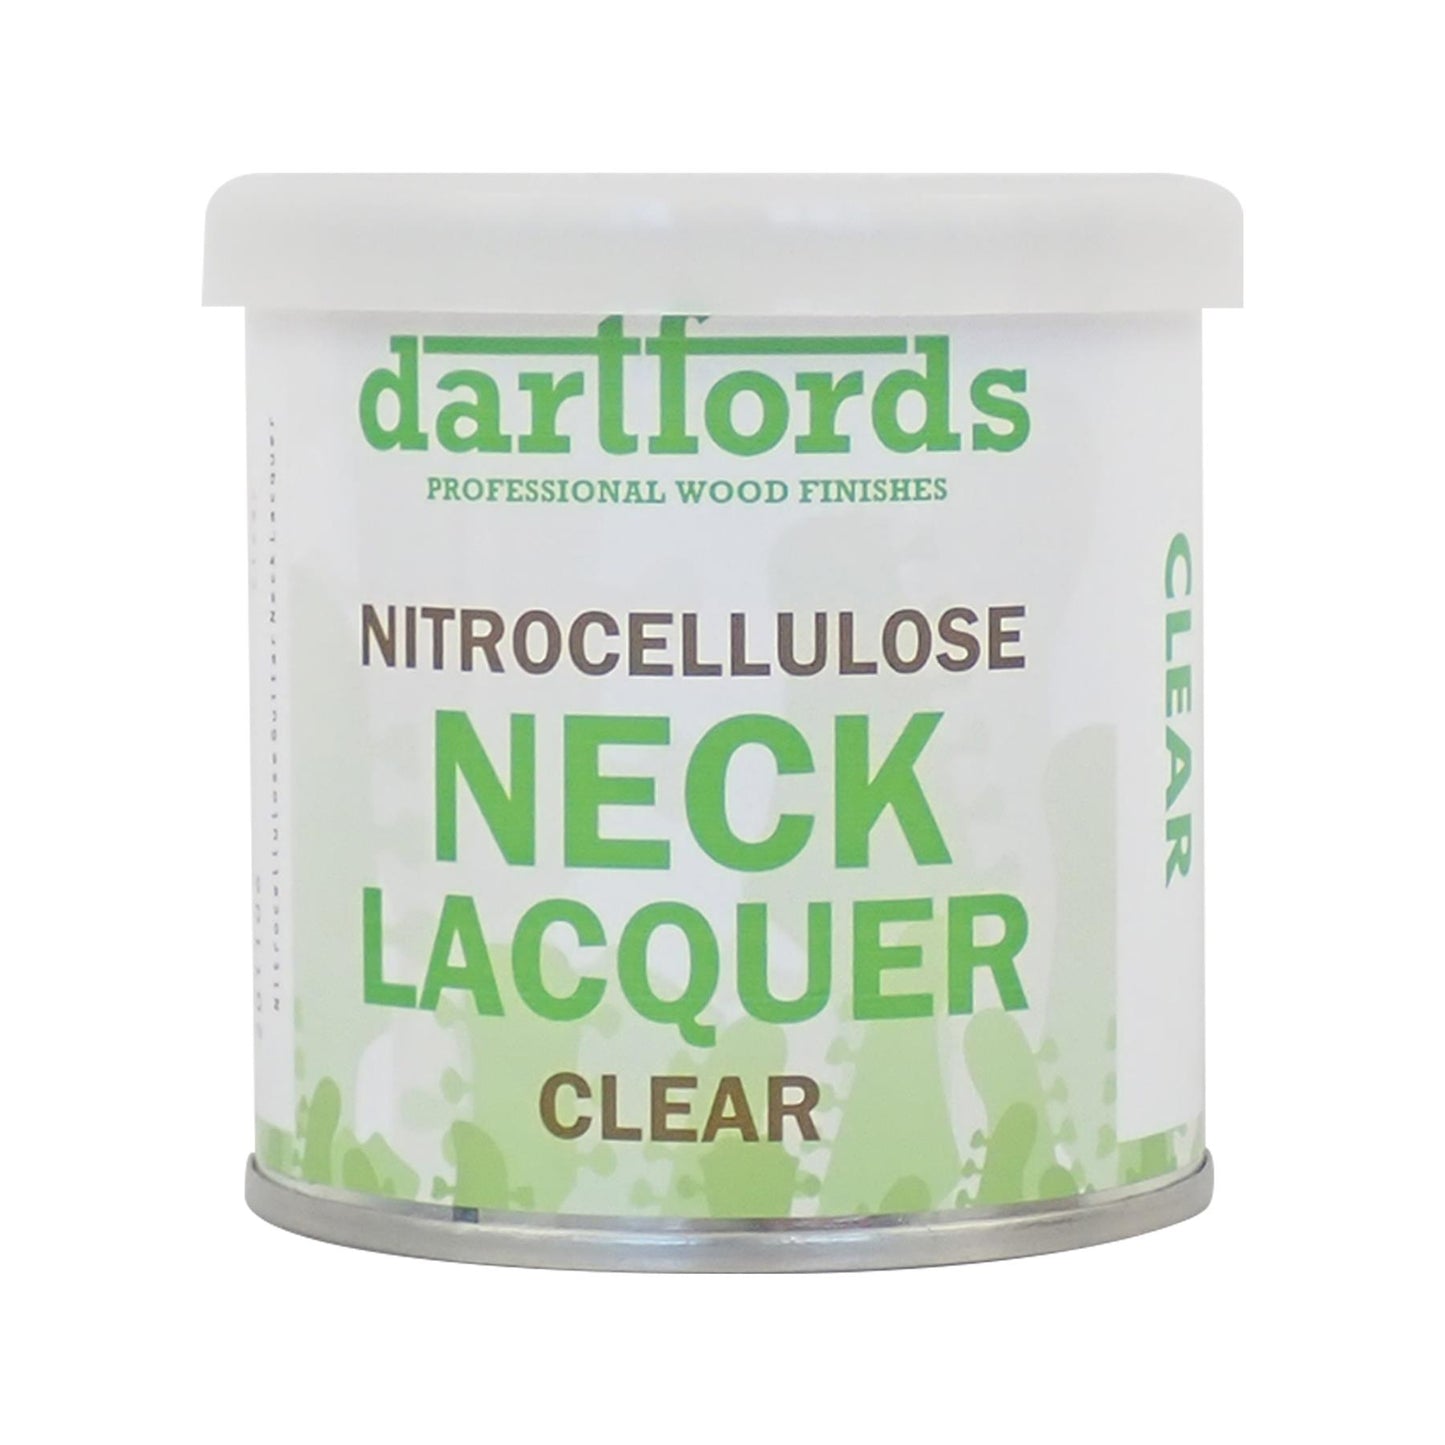 dartfords Clear Nitrocellulose Guitar Neck Lacquer - 230ml Tin